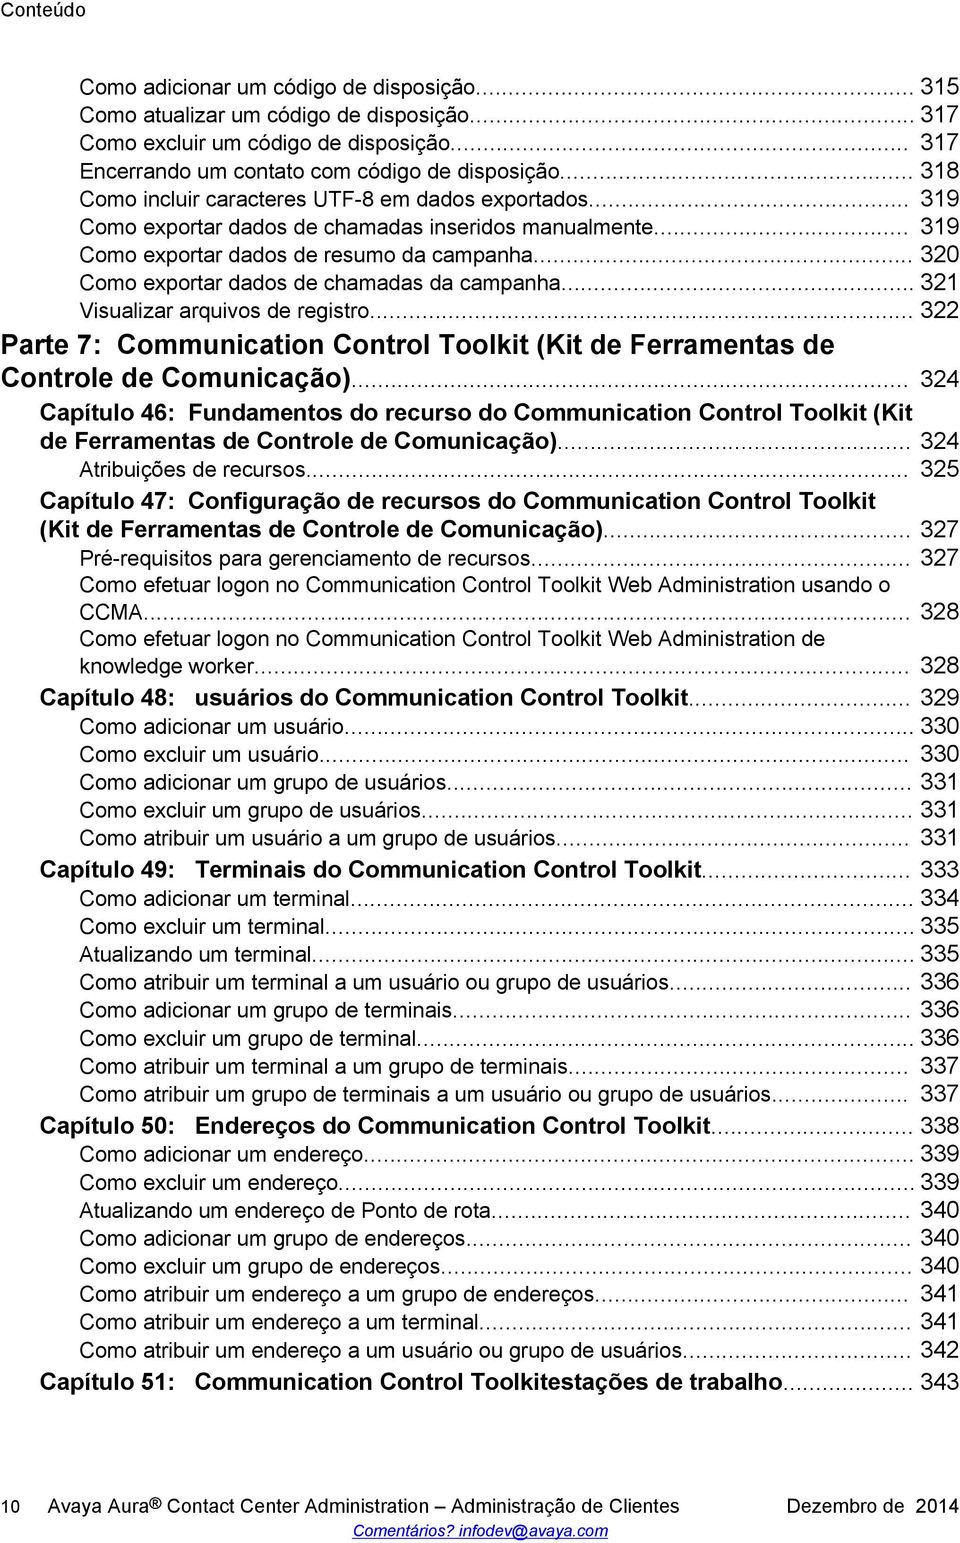 .. 320 Como exportar dados de chamadas da campanha... 321 Visualizar arquivos de registro... 322 Parte 7: Communication Control Toolkit (Kit de Ferramentas de Controle de Comunicação).